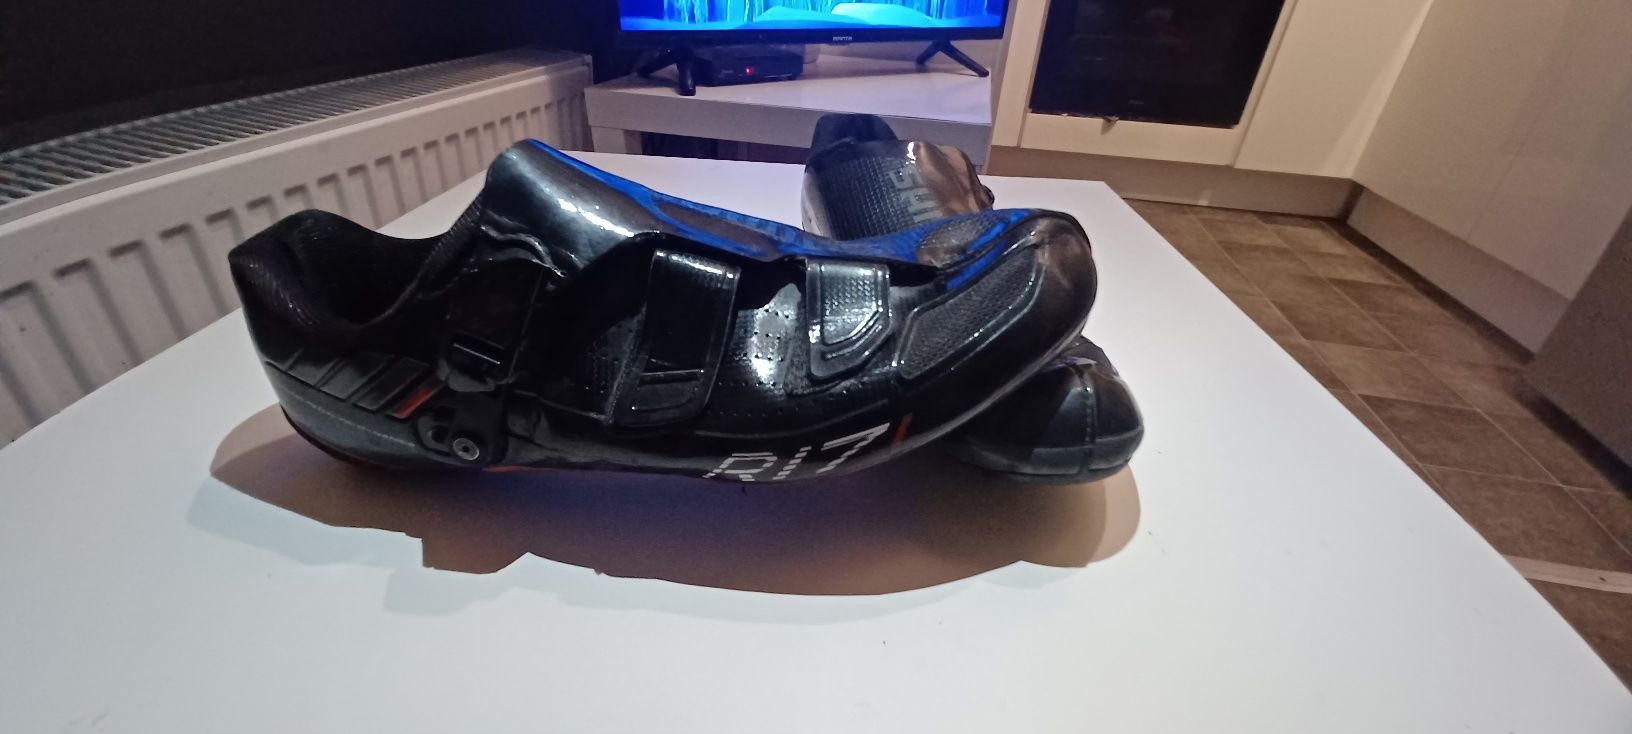 Karbonowe buty SPD szosowe Shimano R171 rozm 43